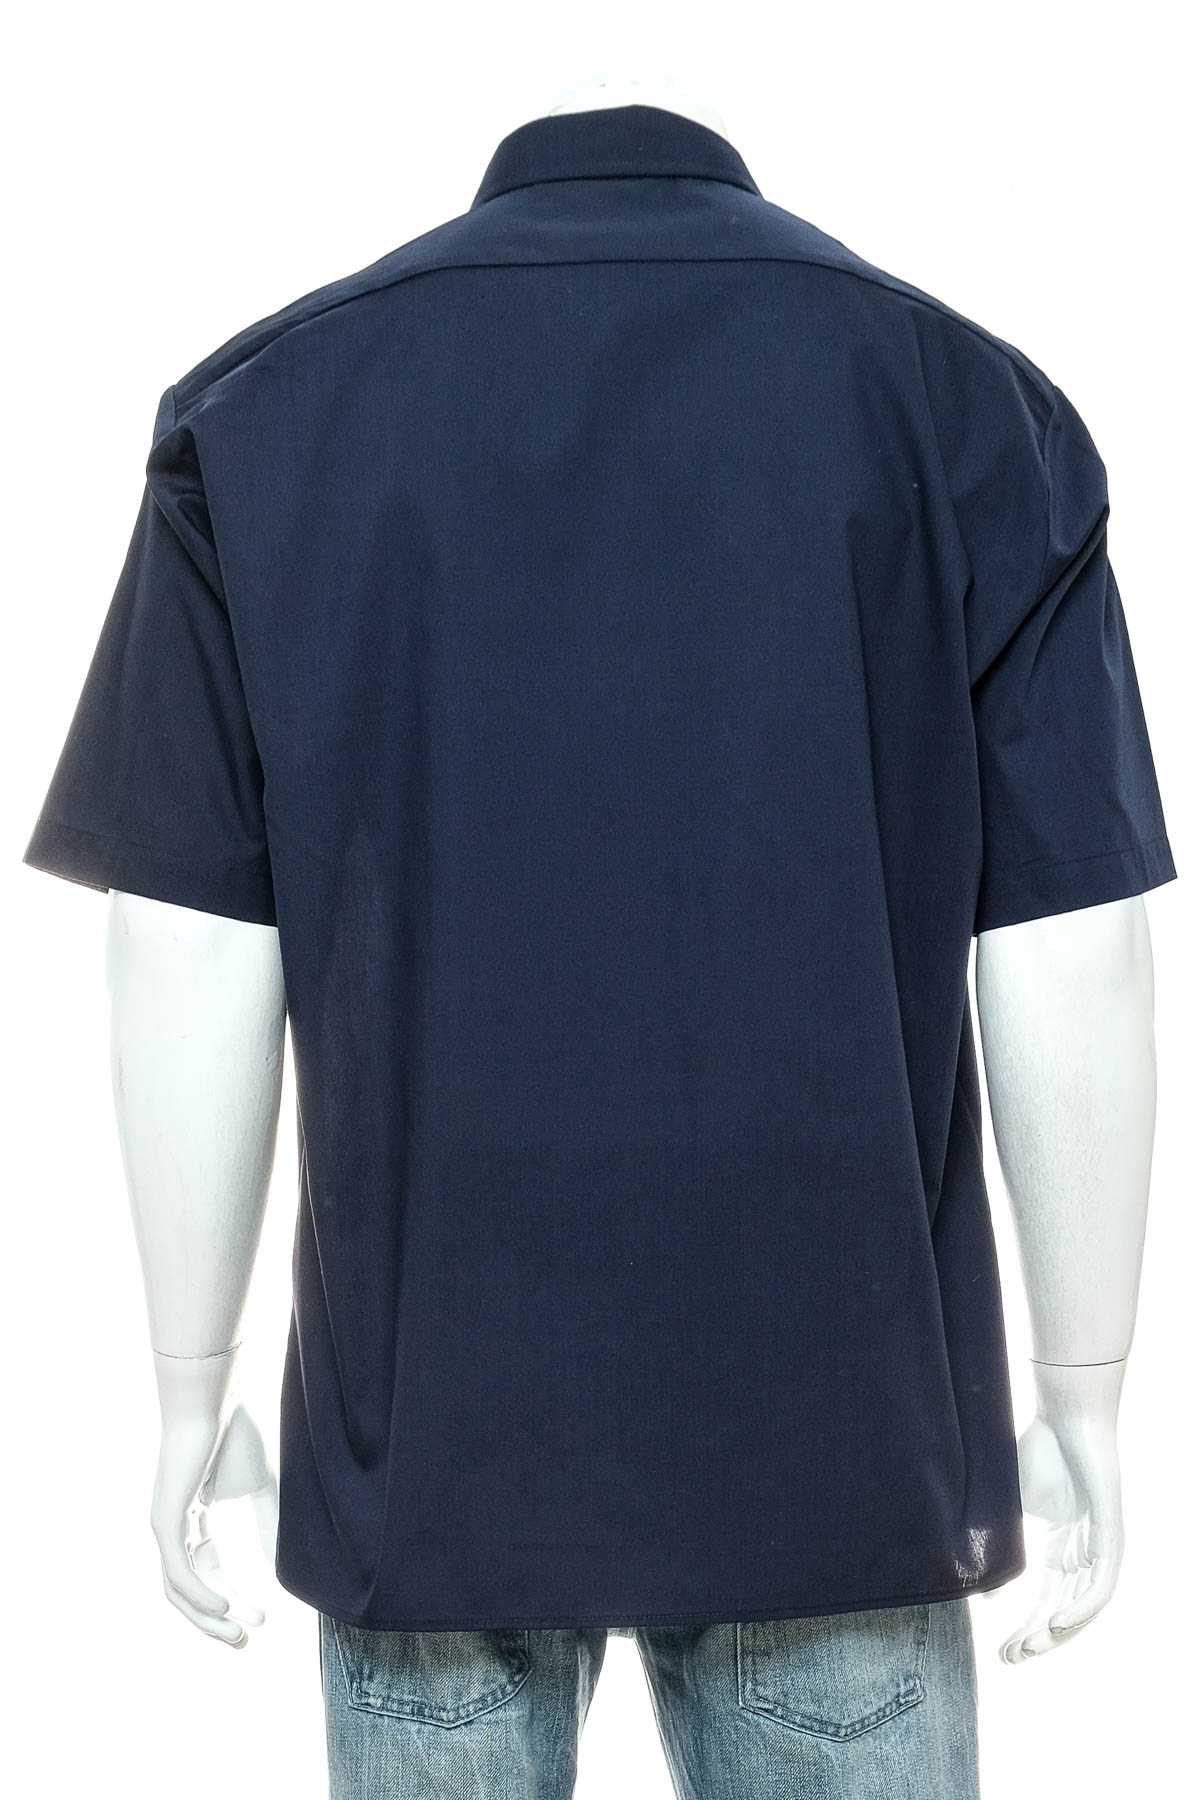 Ανδρικό πουκάμισο - PREMIER - 1